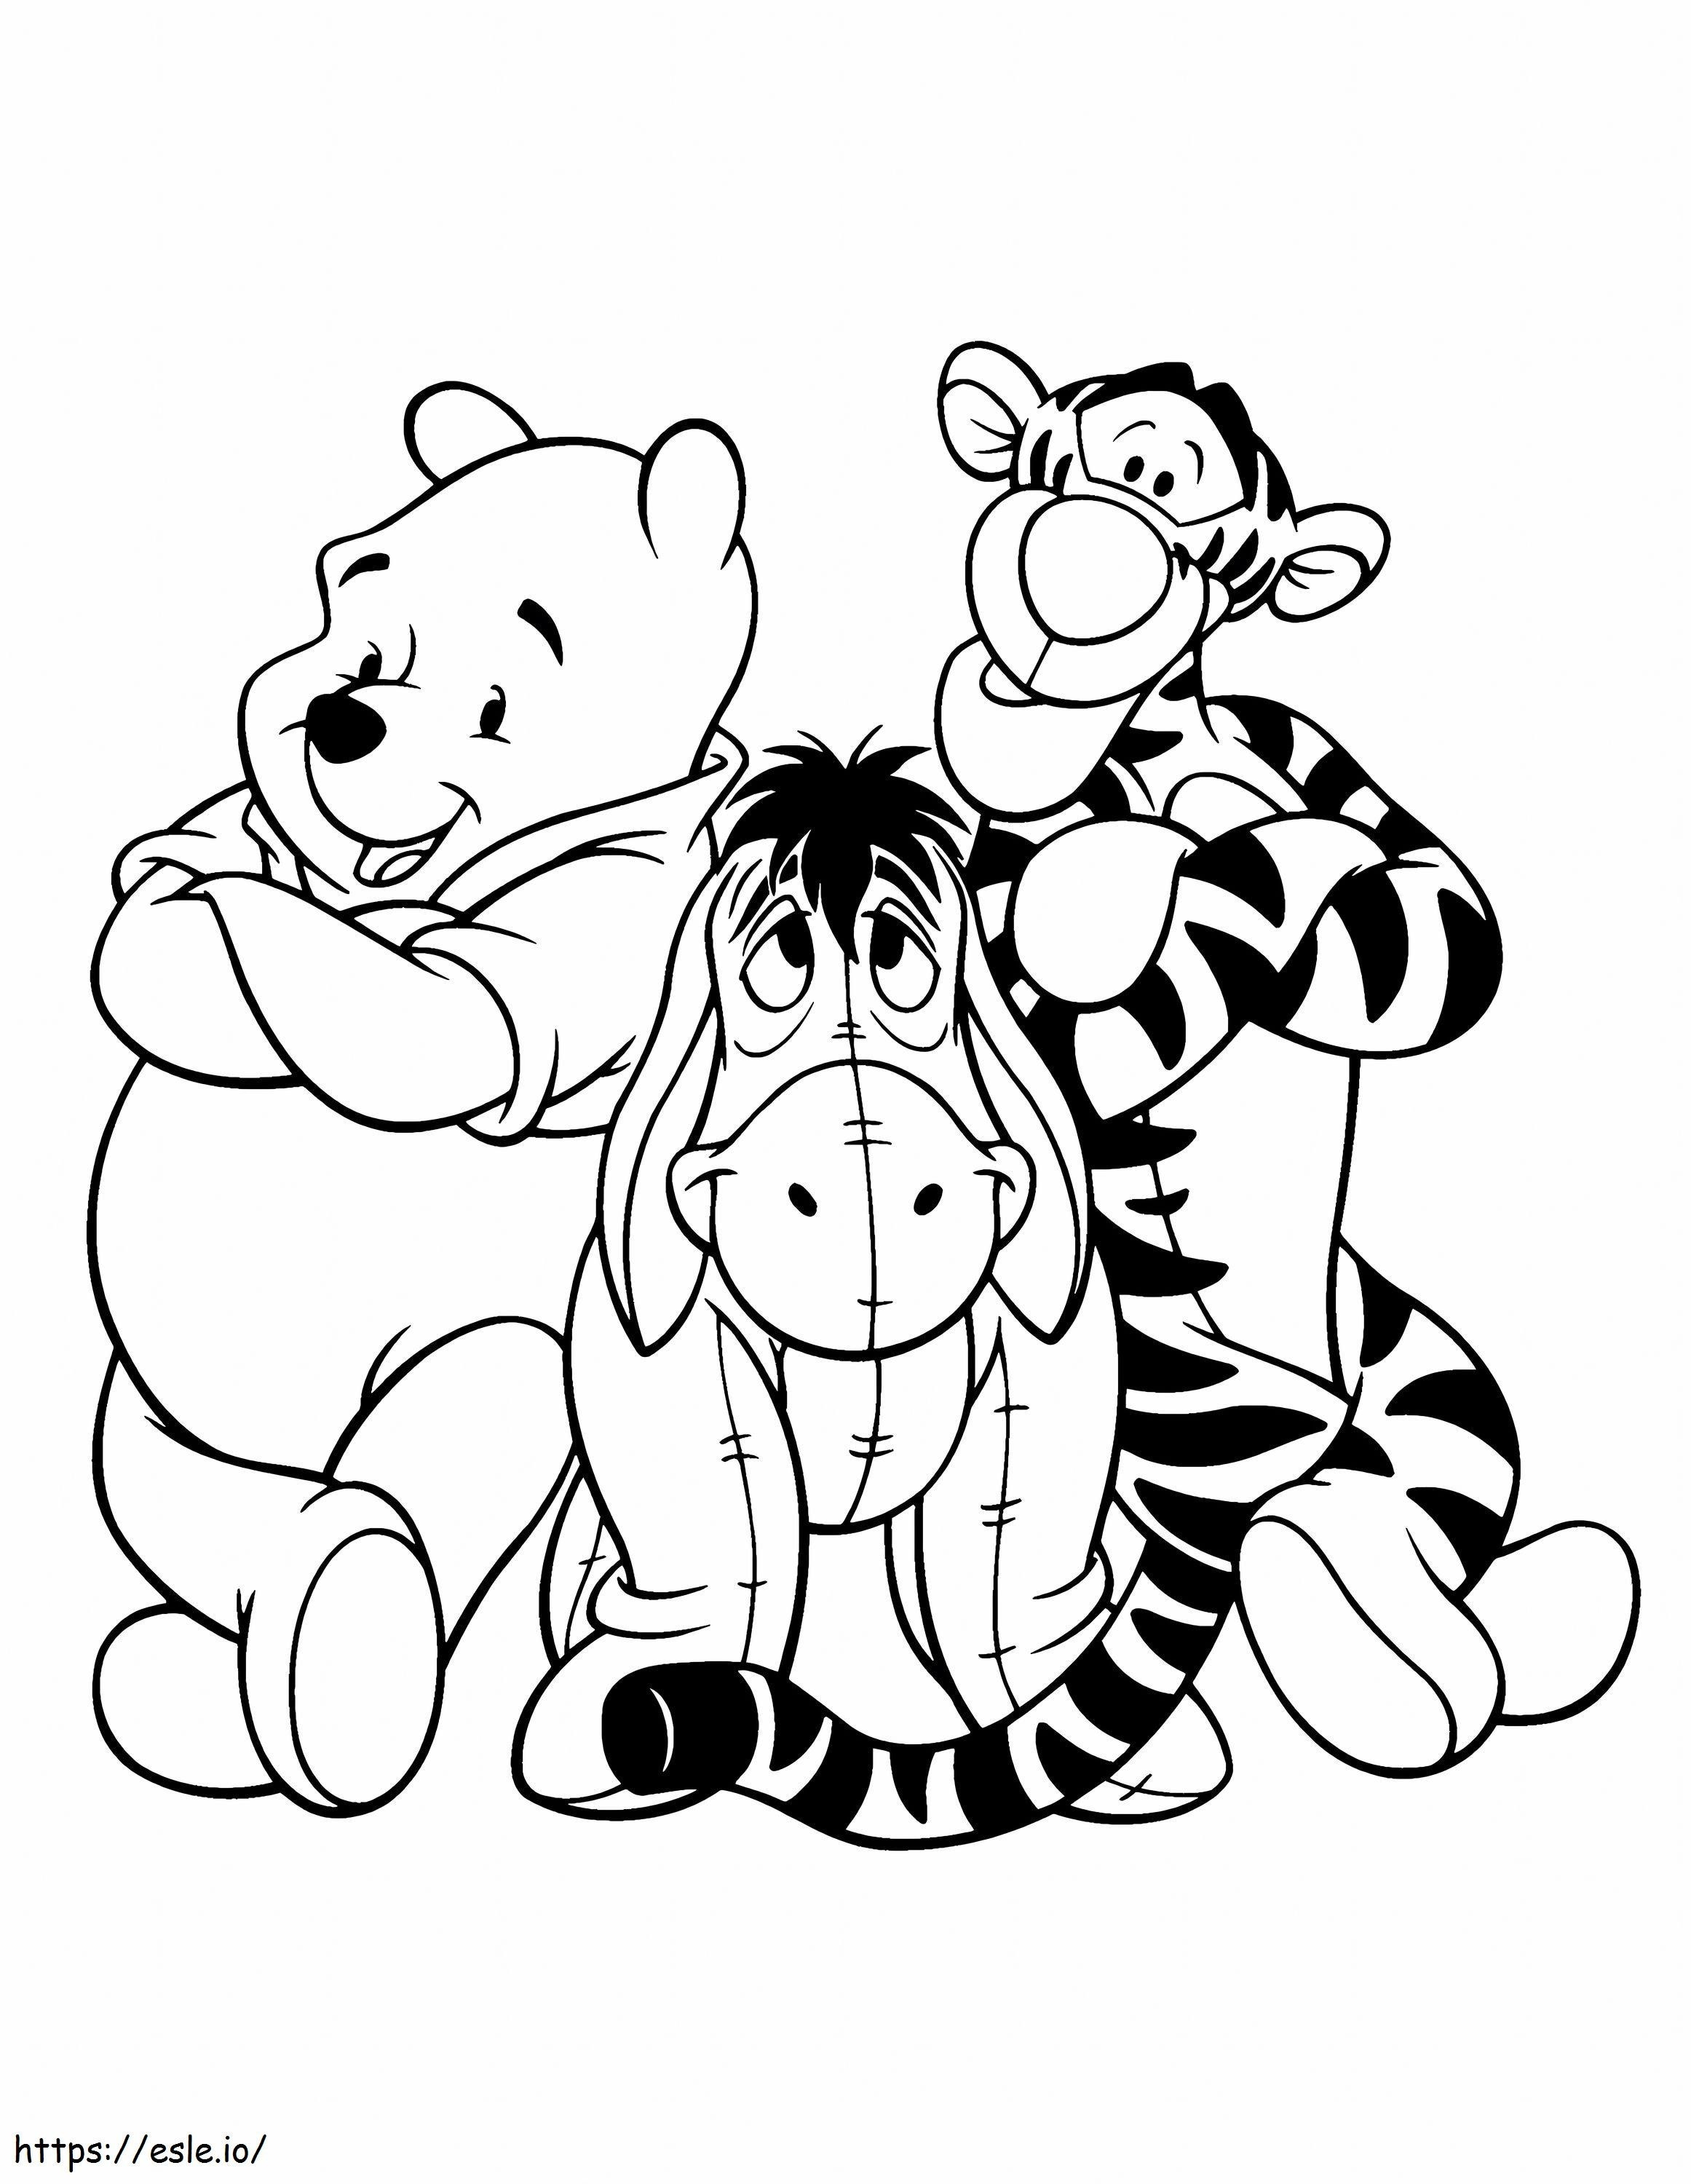 Winnie De Pooh e due amici da colorare